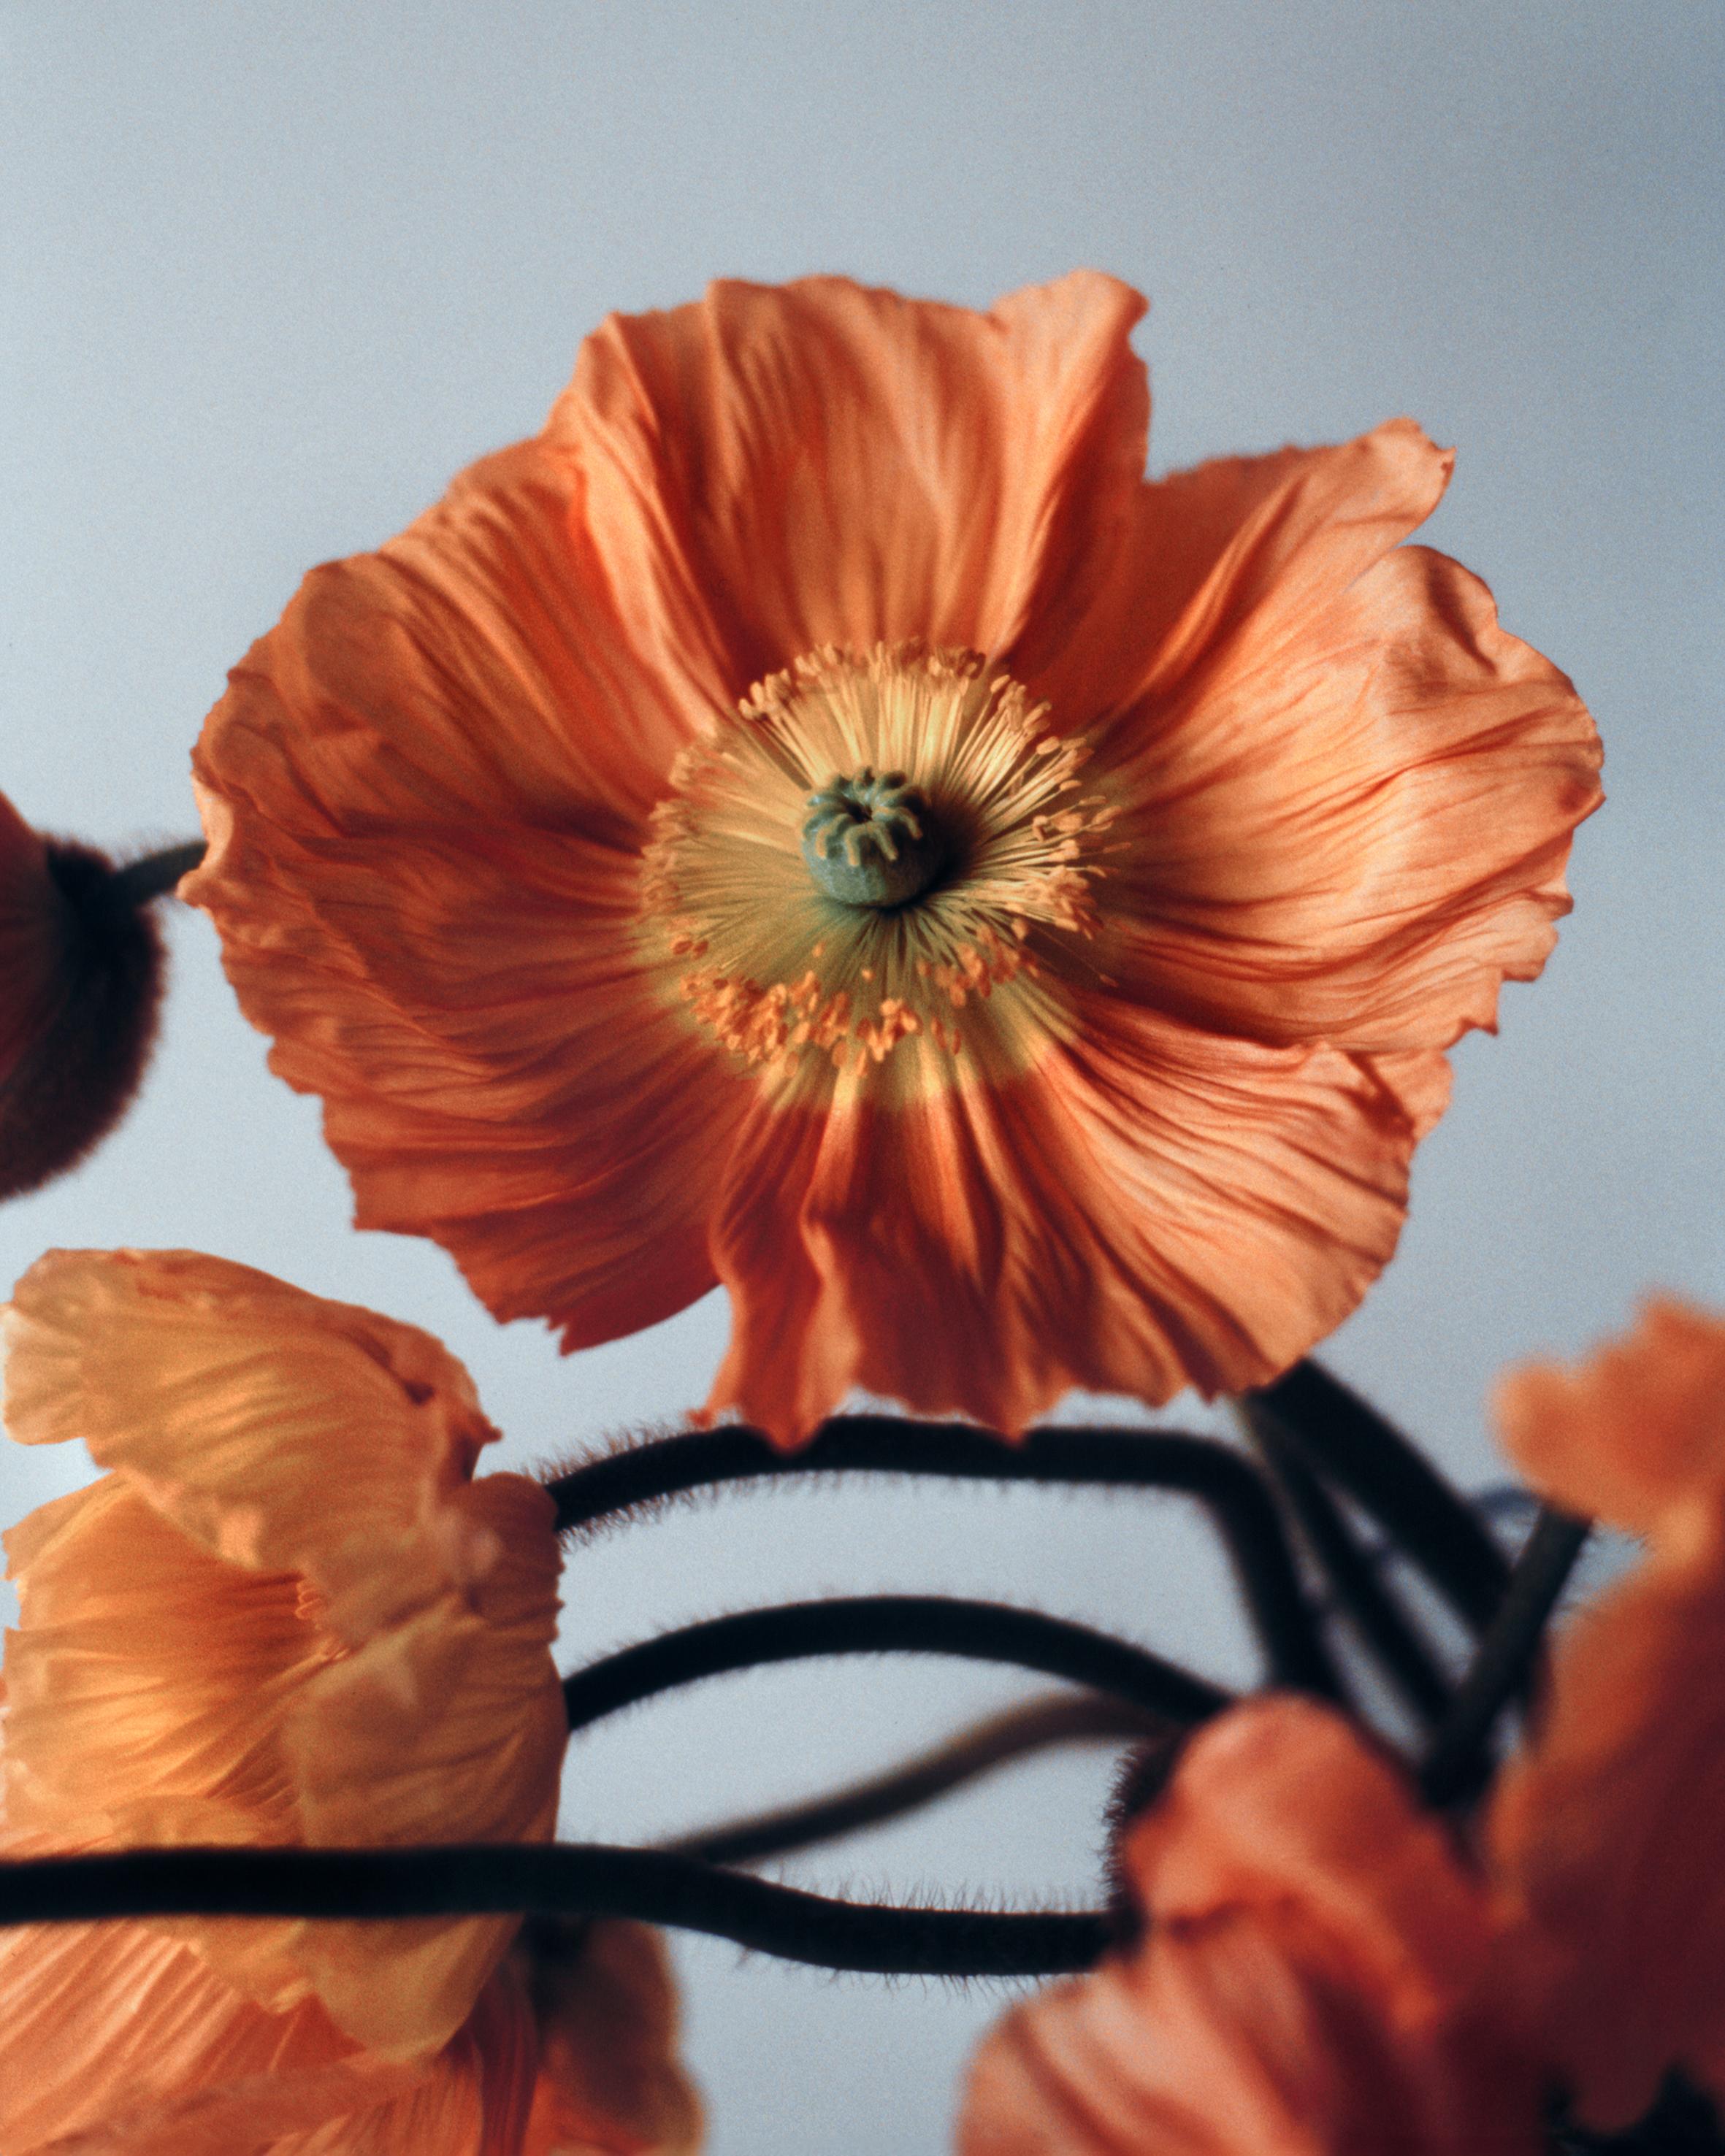 Poppies orange n°2 - Photographie florale analogue, édition limitée à 20 exemplaires